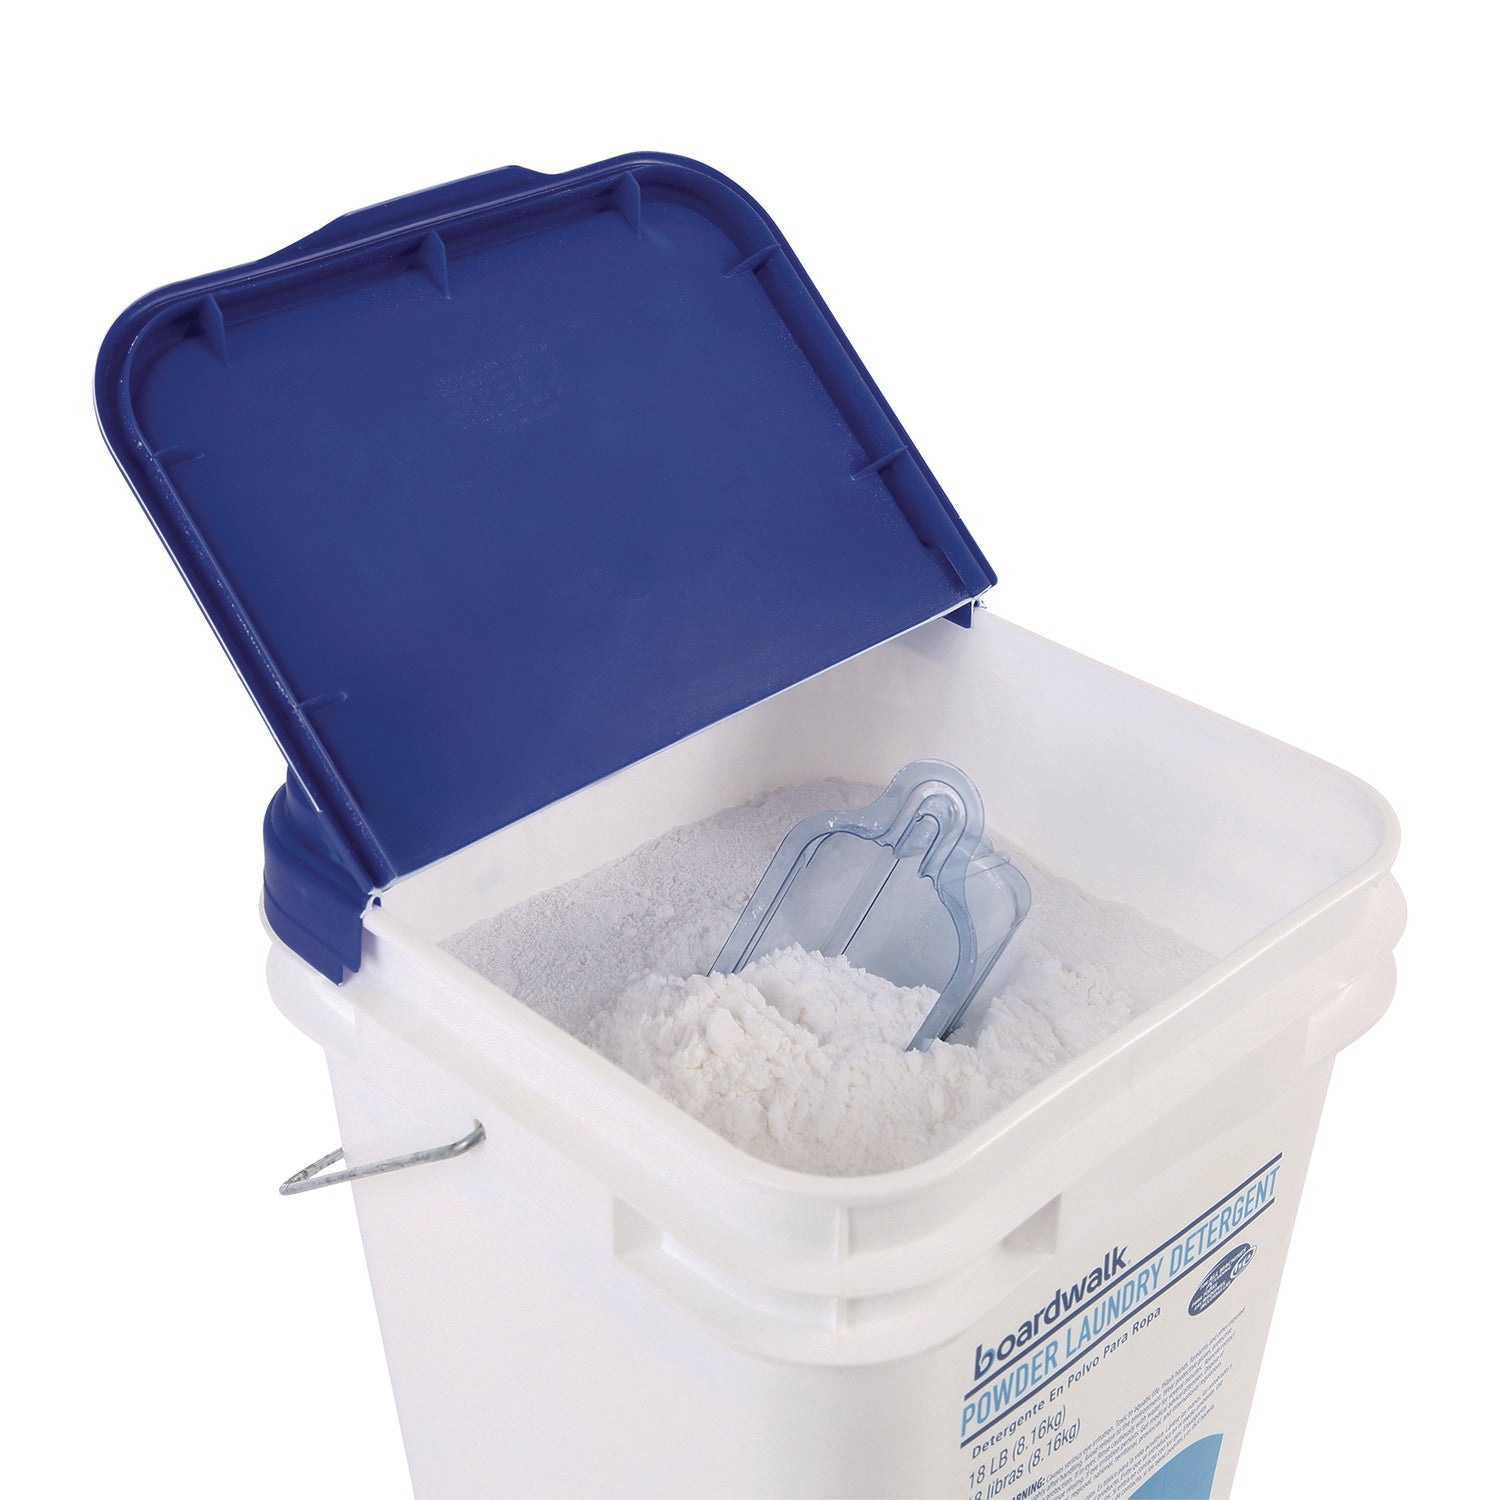 Laundry Detergent Powder, Low Foam, Crisp Clean Scent, 18 lb Pail - 5